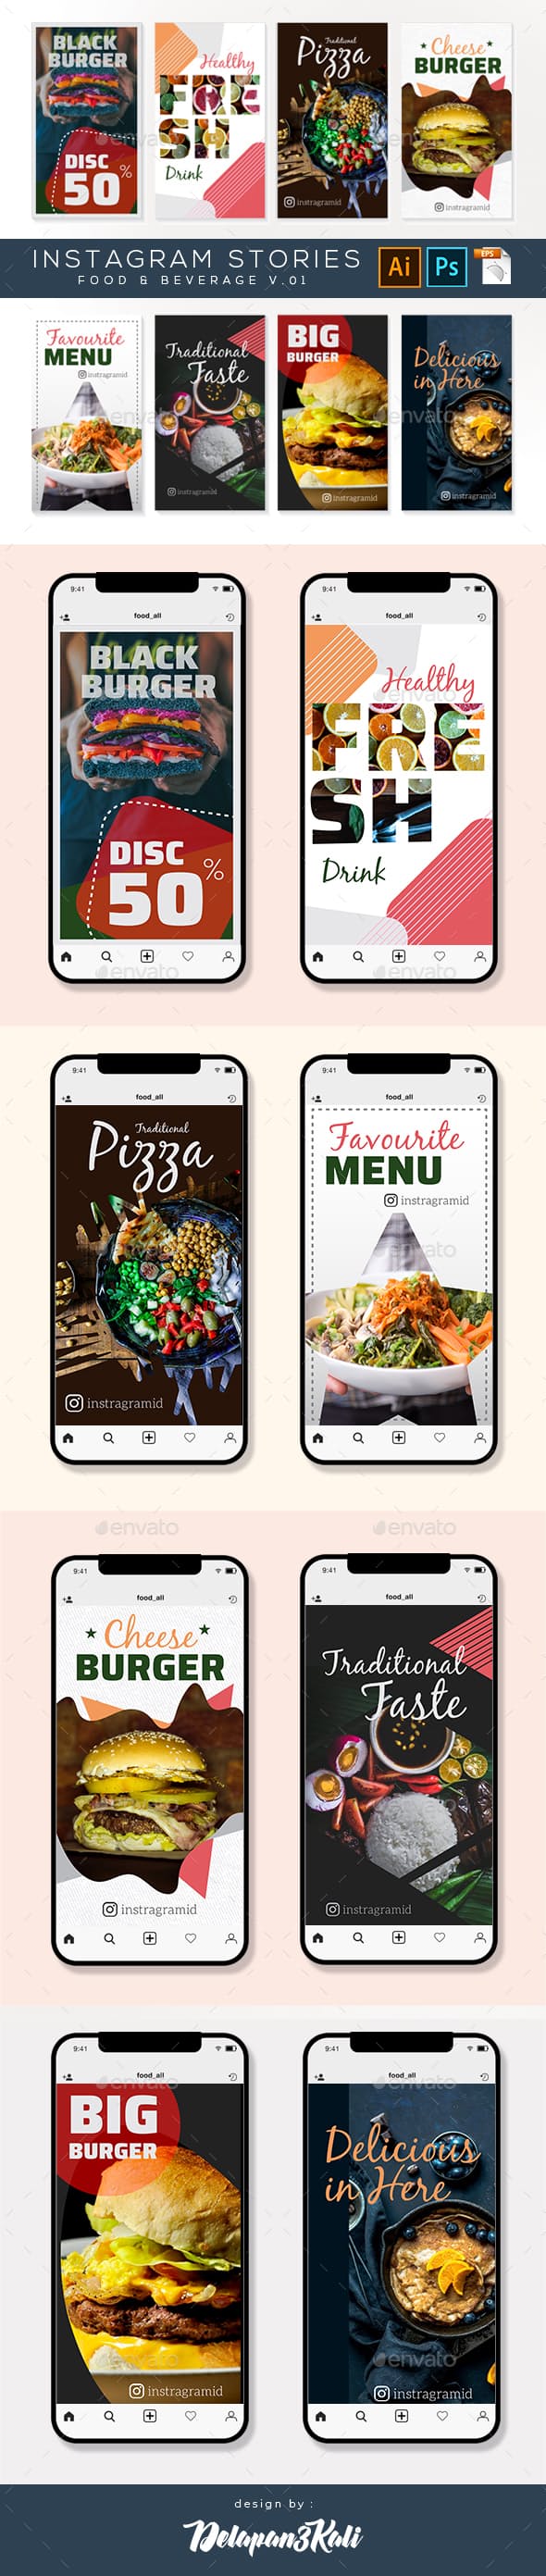 Instagram食品和饮料主题故事照片墙模板素材库精选插图